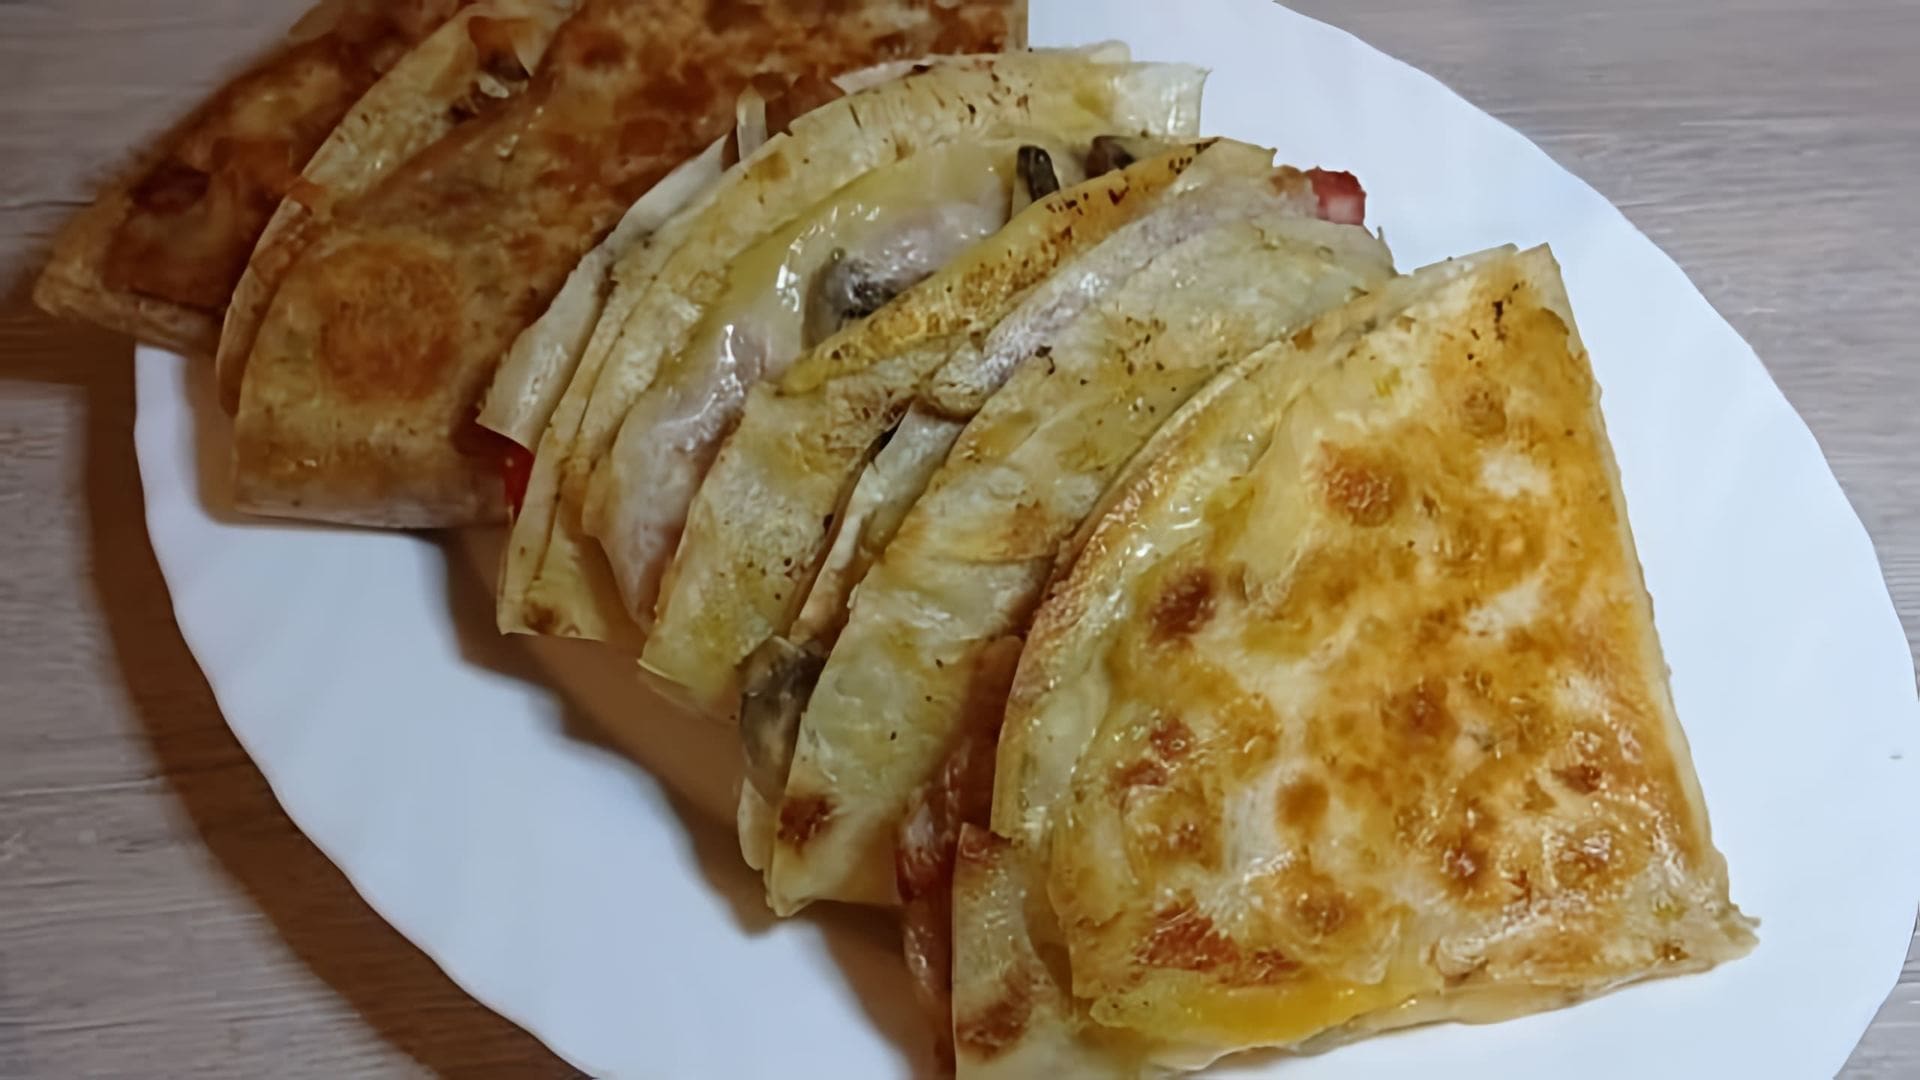 В этом видео демонстрируется процесс приготовления вкусного и сытного завтрака из армянского лаваша с различными начинками